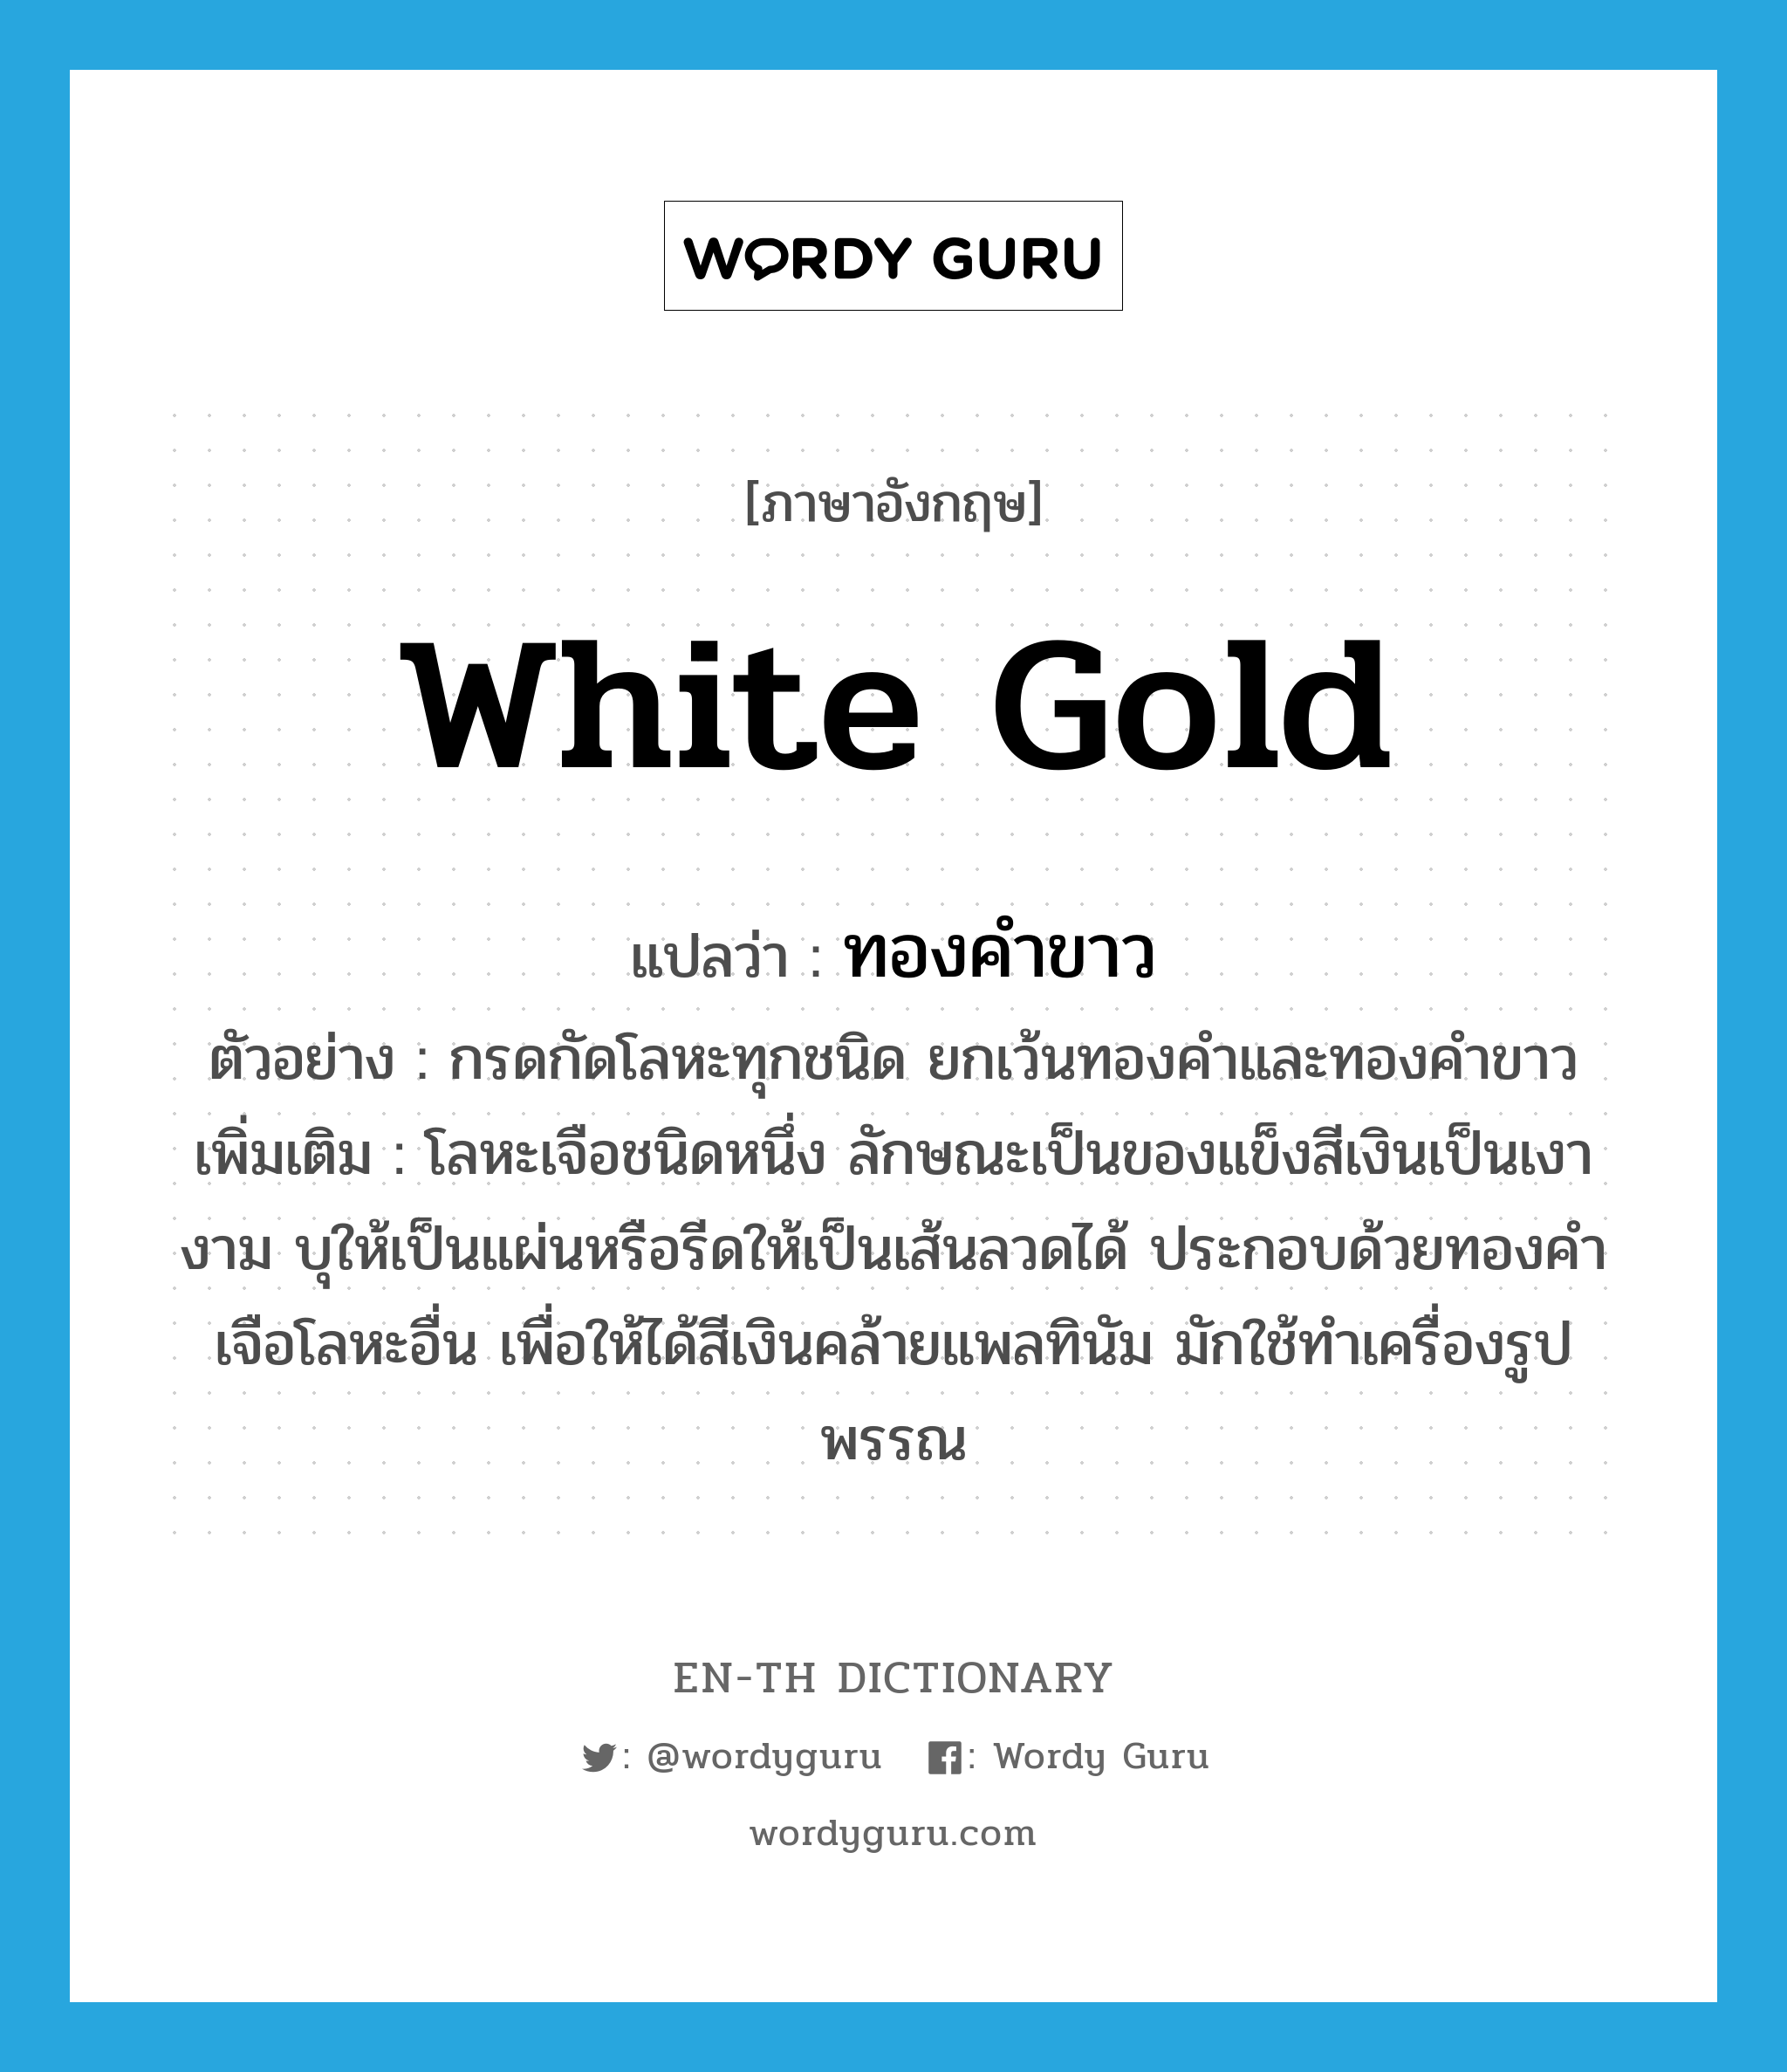 white gold แปลว่า?, คำศัพท์ภาษาอังกฤษ white gold แปลว่า ทองคำขาว ประเภท N ตัวอย่าง กรดกัดโลหะทุกชนิด ยกเว้นทองคำและทองคำขาว เพิ่มเติม โลหะเจือชนิดหนึ่ง ลักษณะเป็นของแข็งสีเงินเป็นเงางาม บุให้เป็นแผ่นหรือรีดให้เป็นเส้นลวดได้ ประกอบด้วยทองคำเจือโลหะอื่น เพื่อให้ได้สีเงินคล้ายแพลทินัม มักใช้ทำเครื่องรูปพรรณ หมวด N